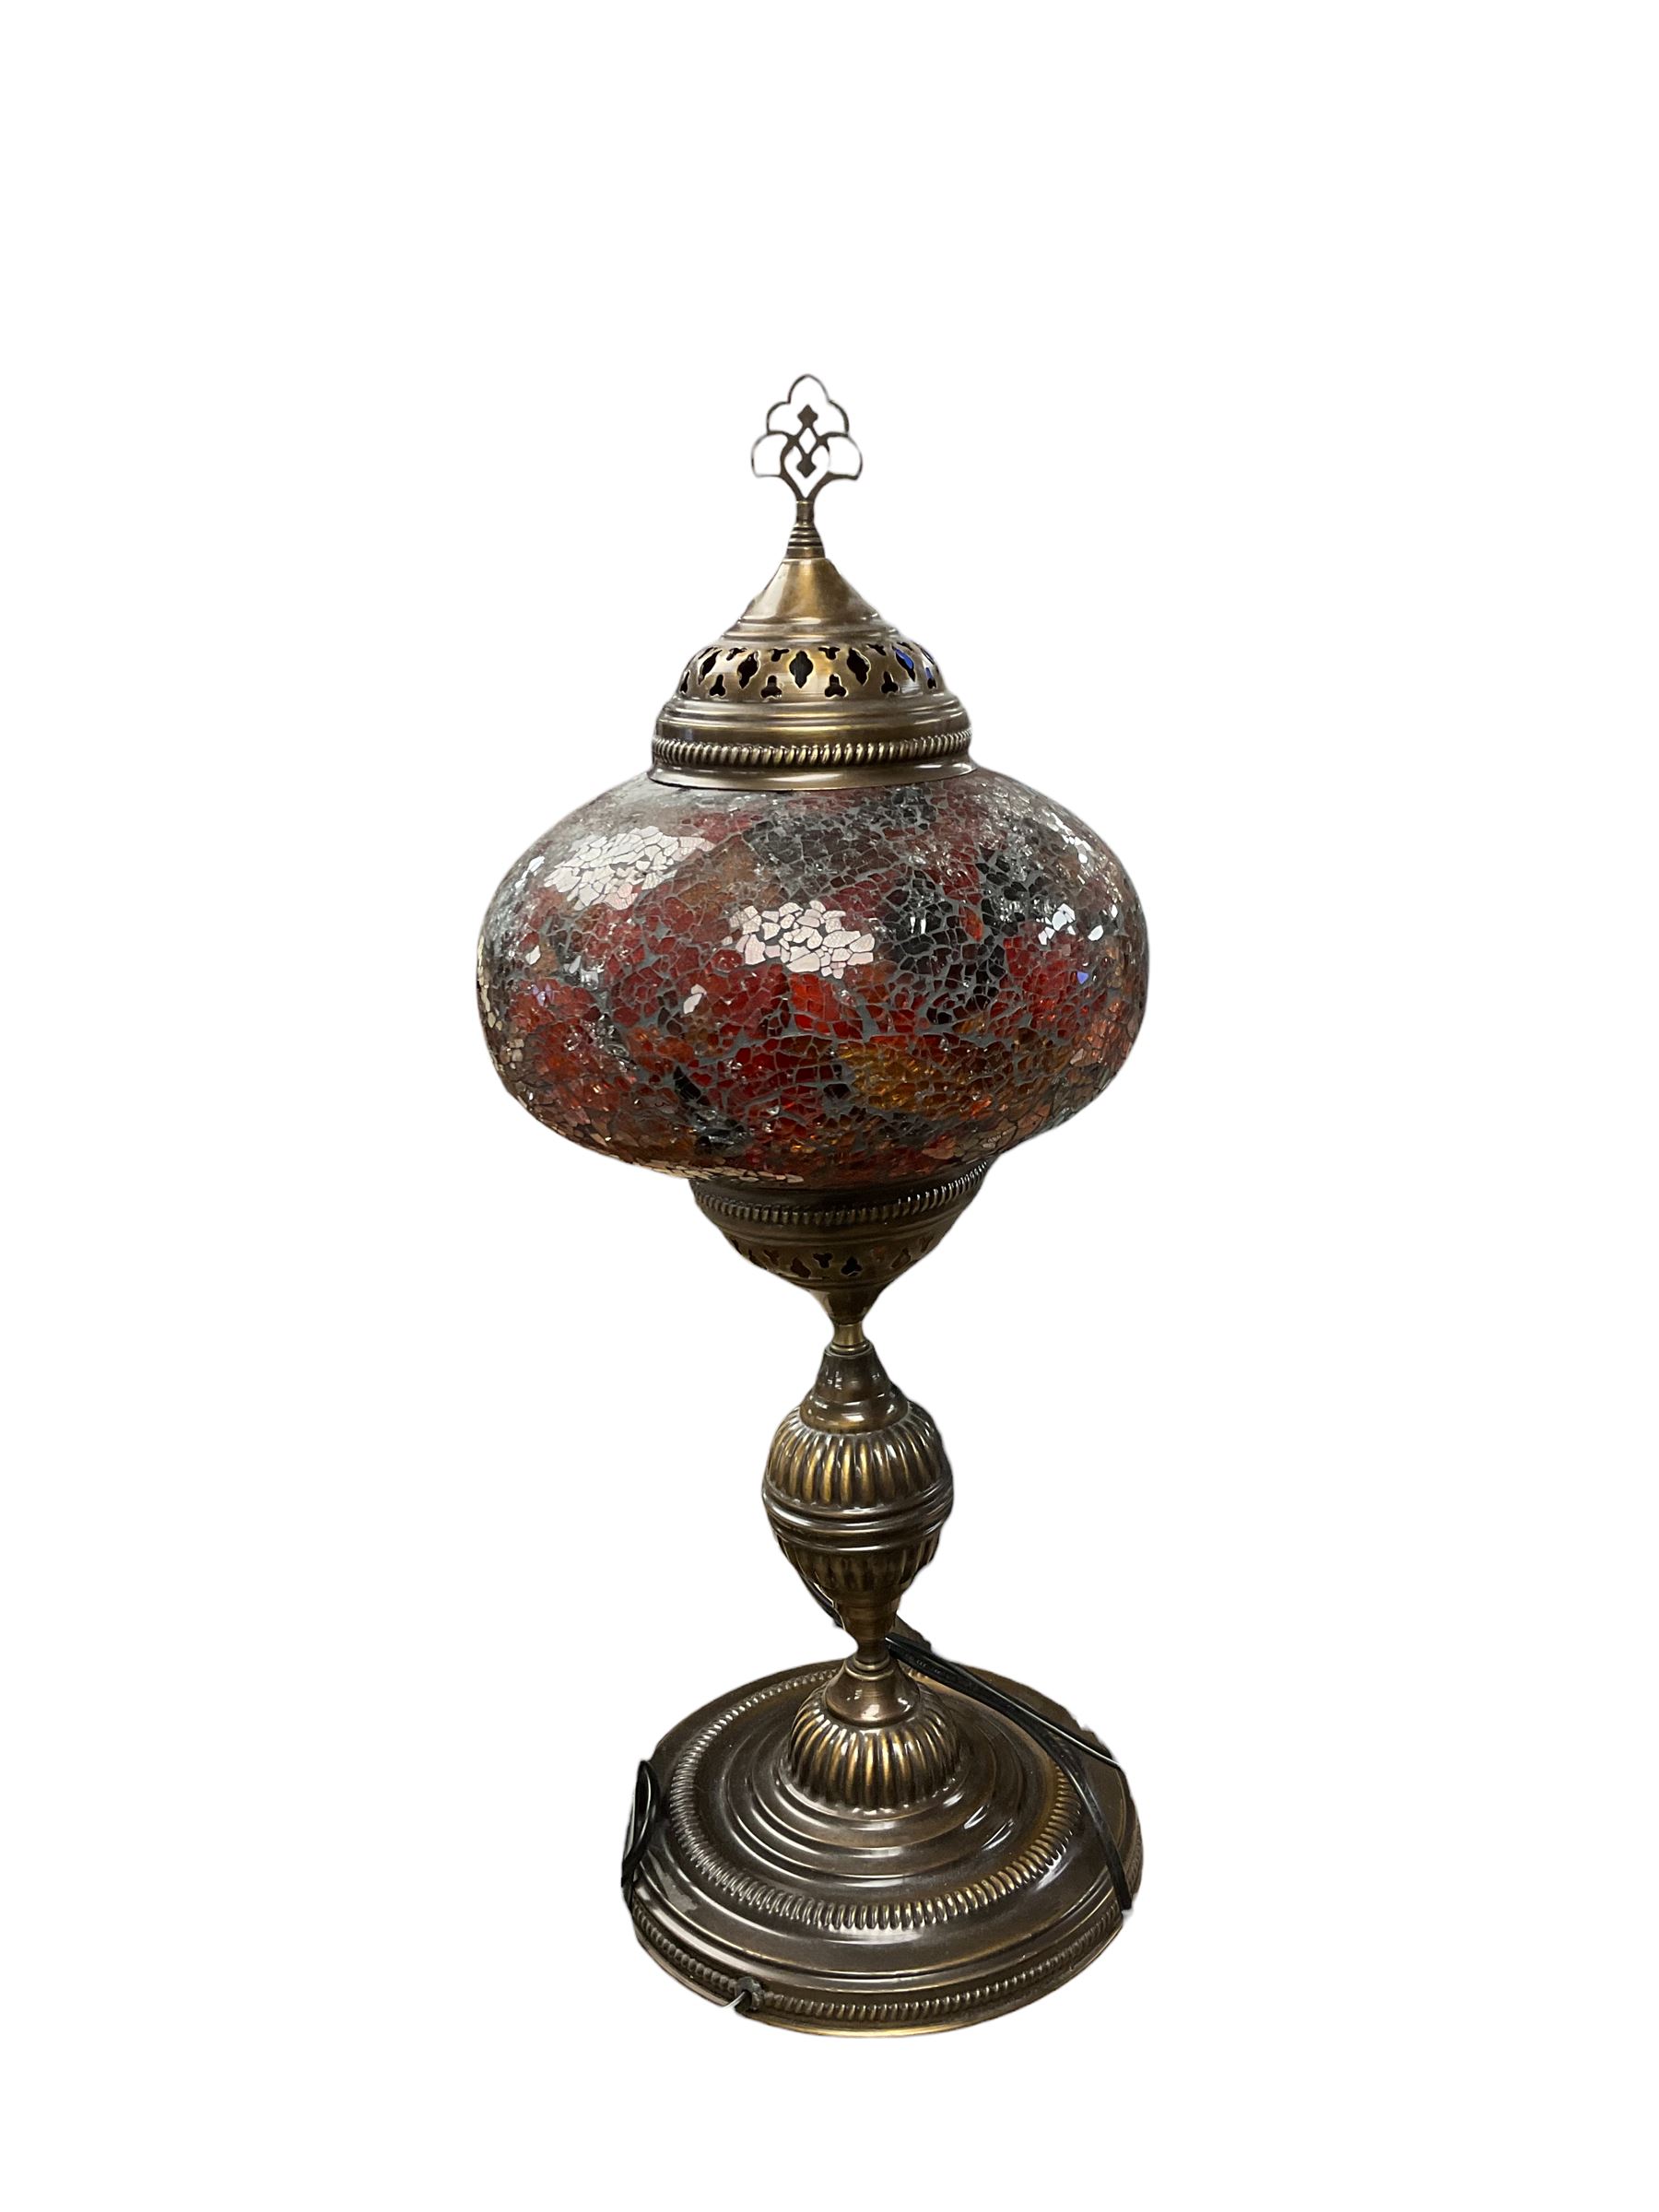 Mosaic crackle glaze globe lamp - Image 2 of 2